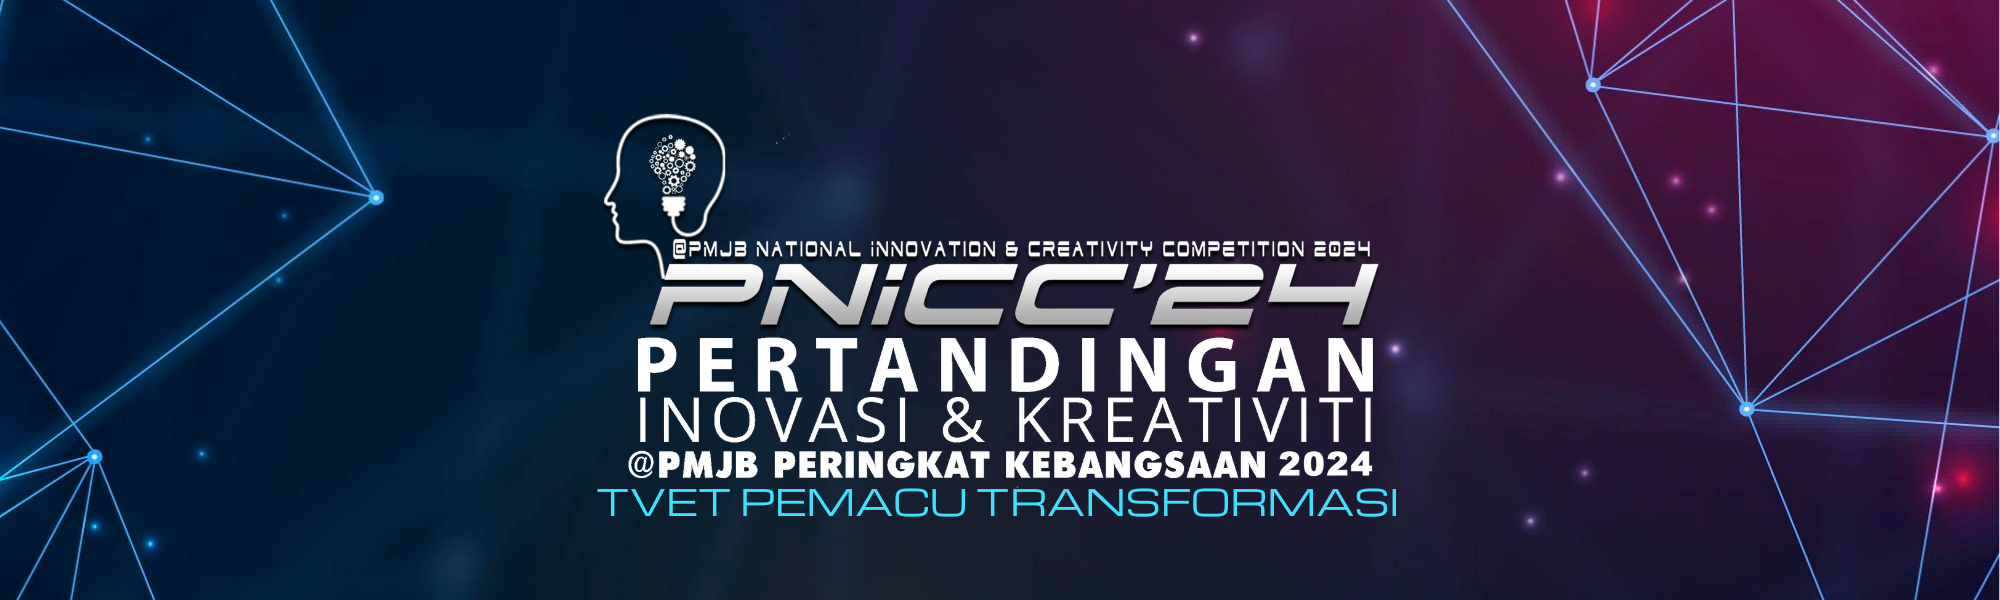 PNICC21_header